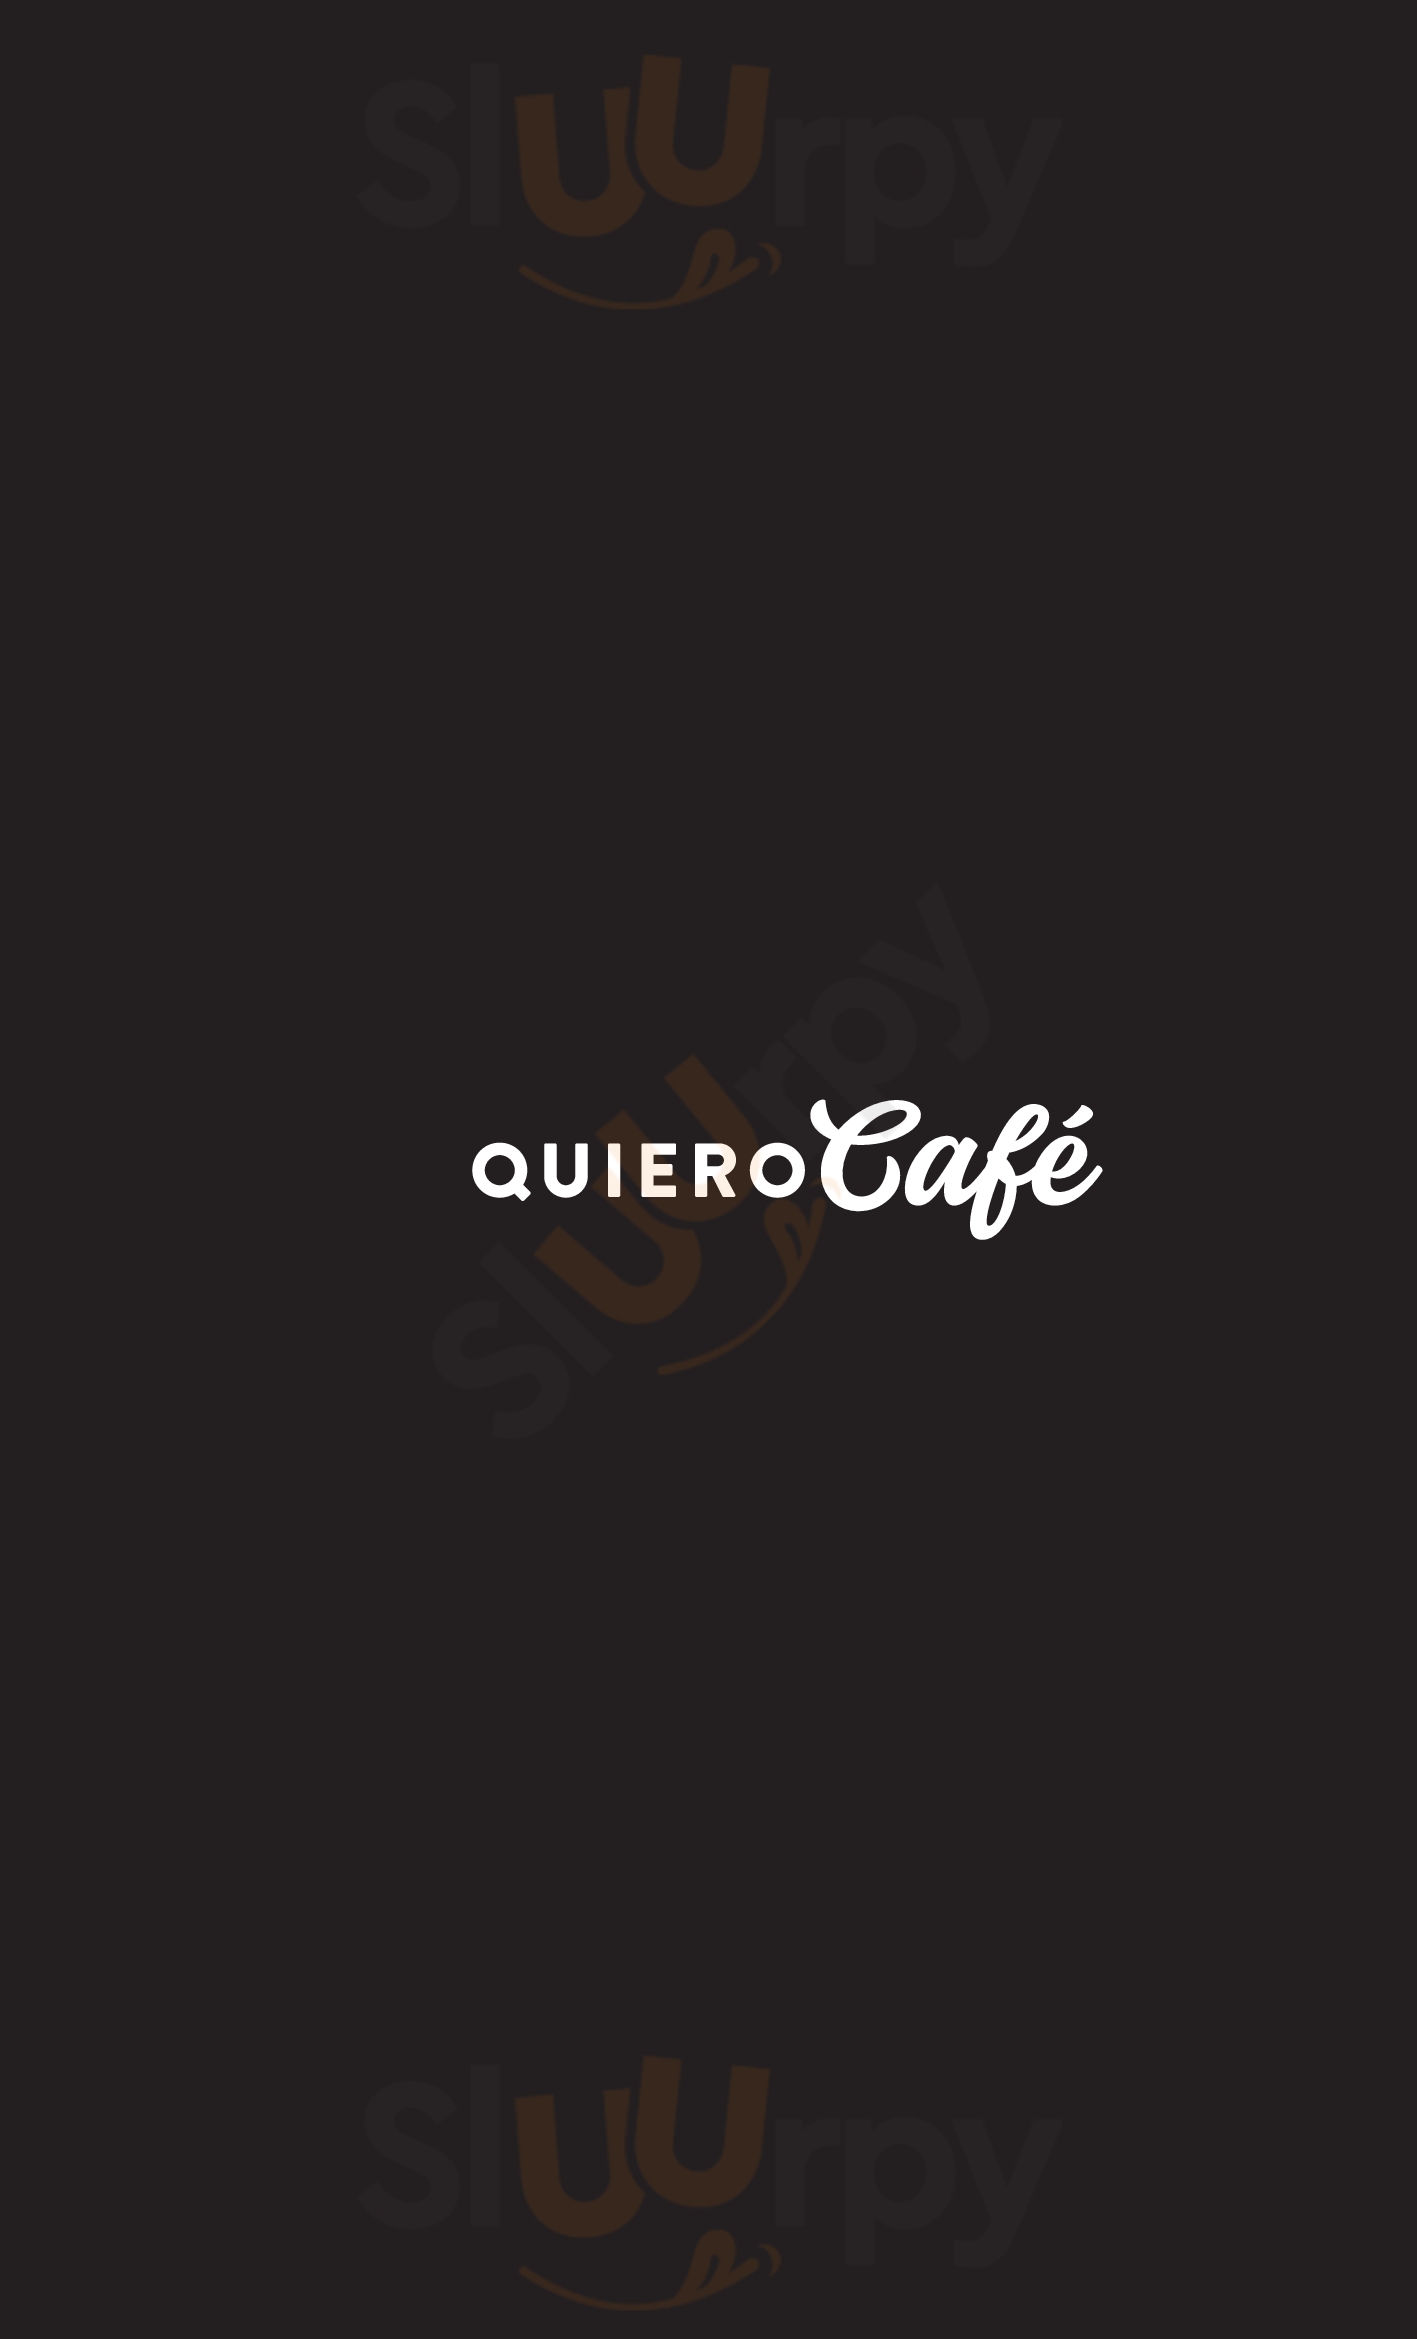 Quiero Cafe Caxias Do Sul Menu - 1